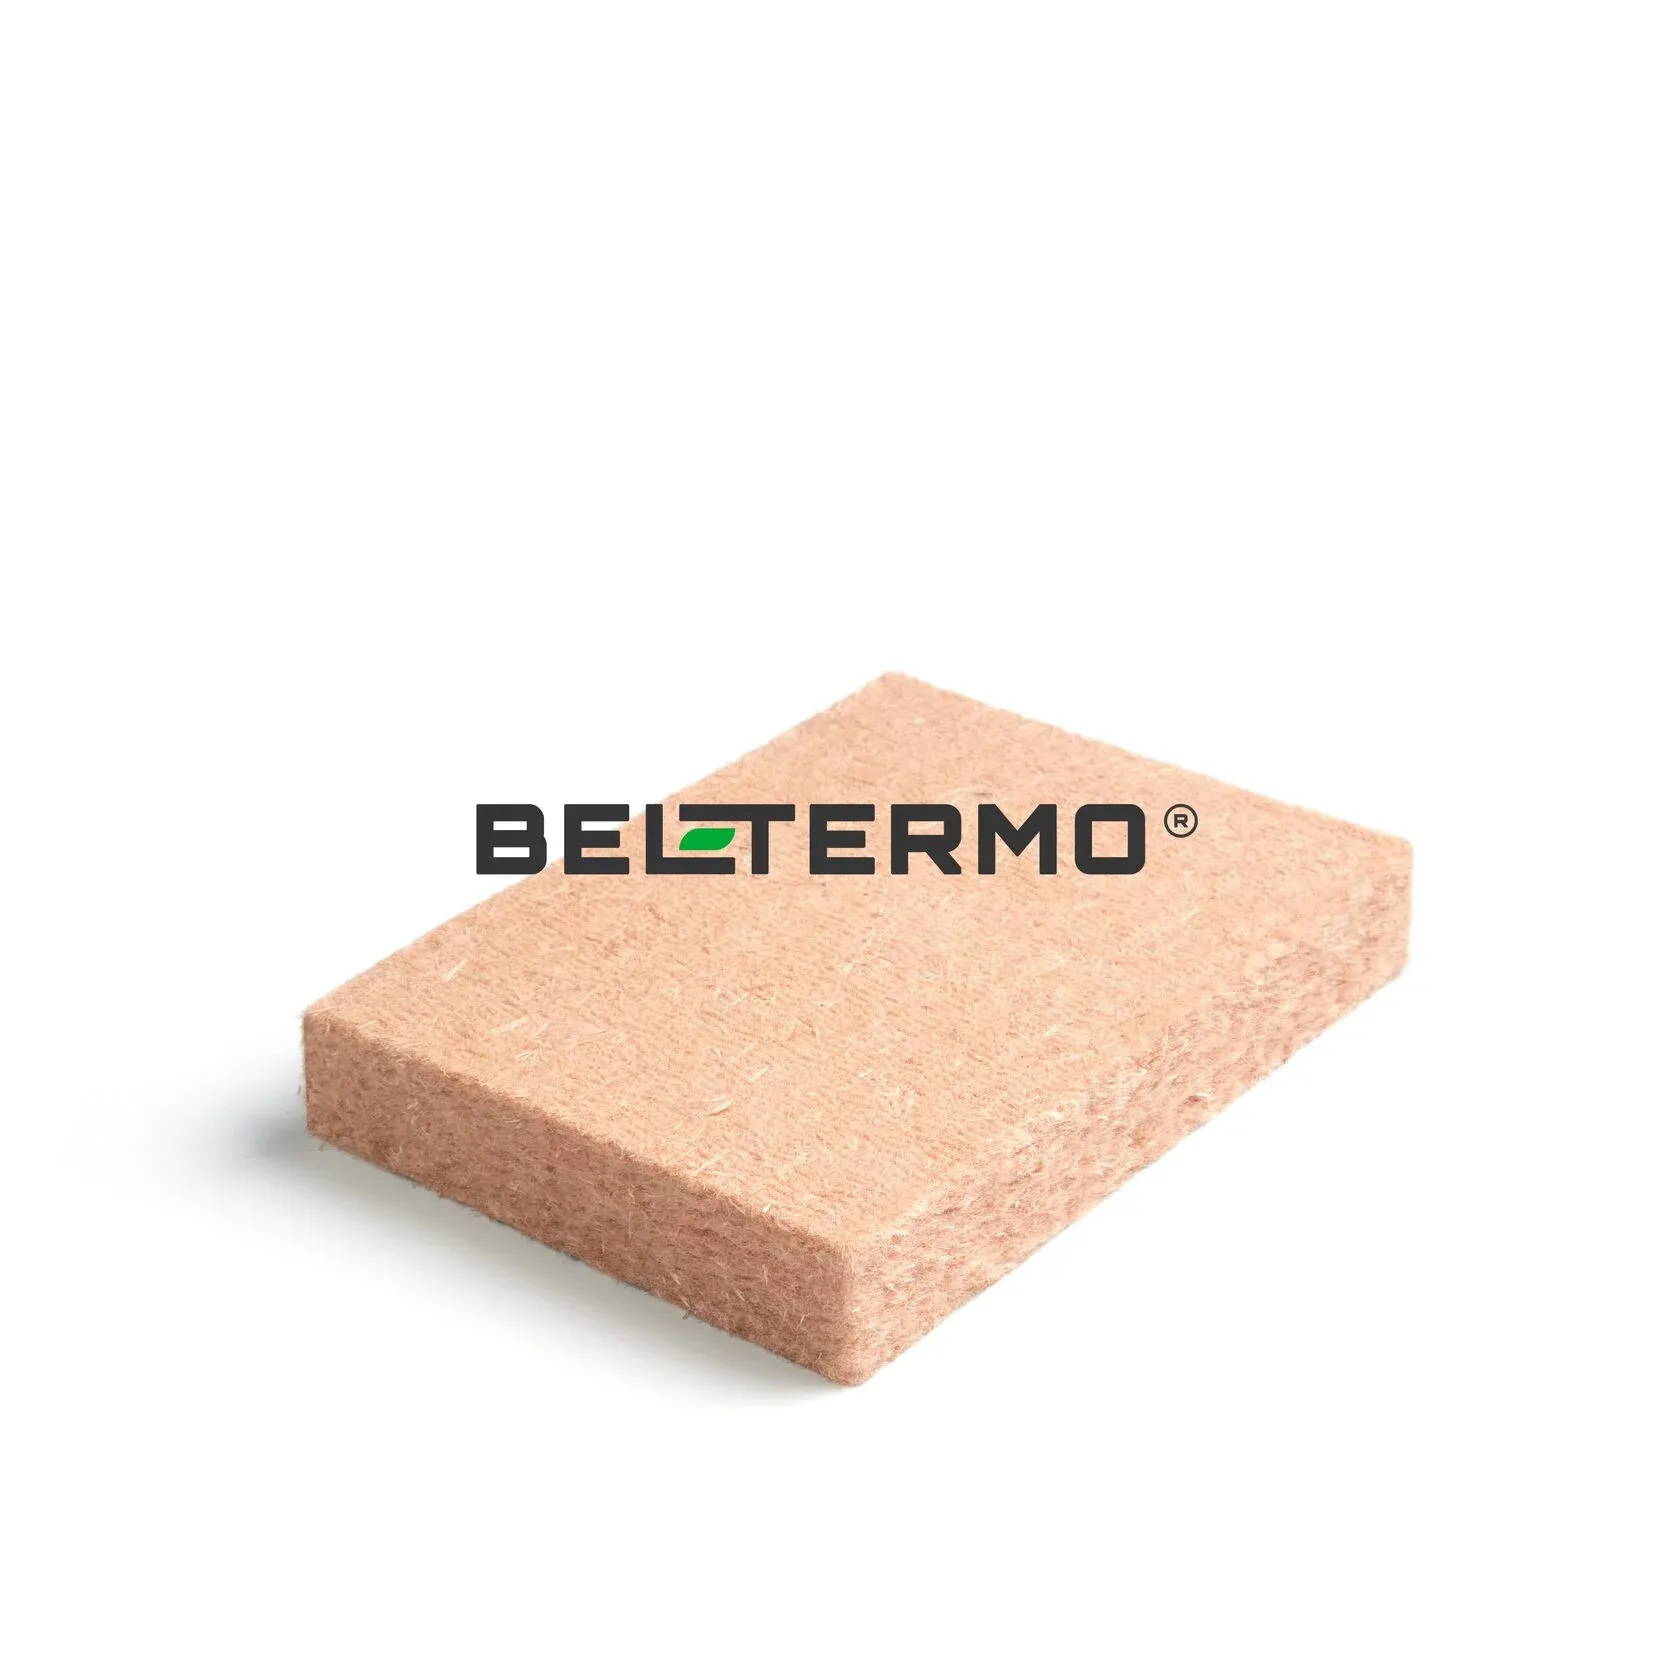 Древесная изоляция BELTERMO (БЕЛТЕРМО)